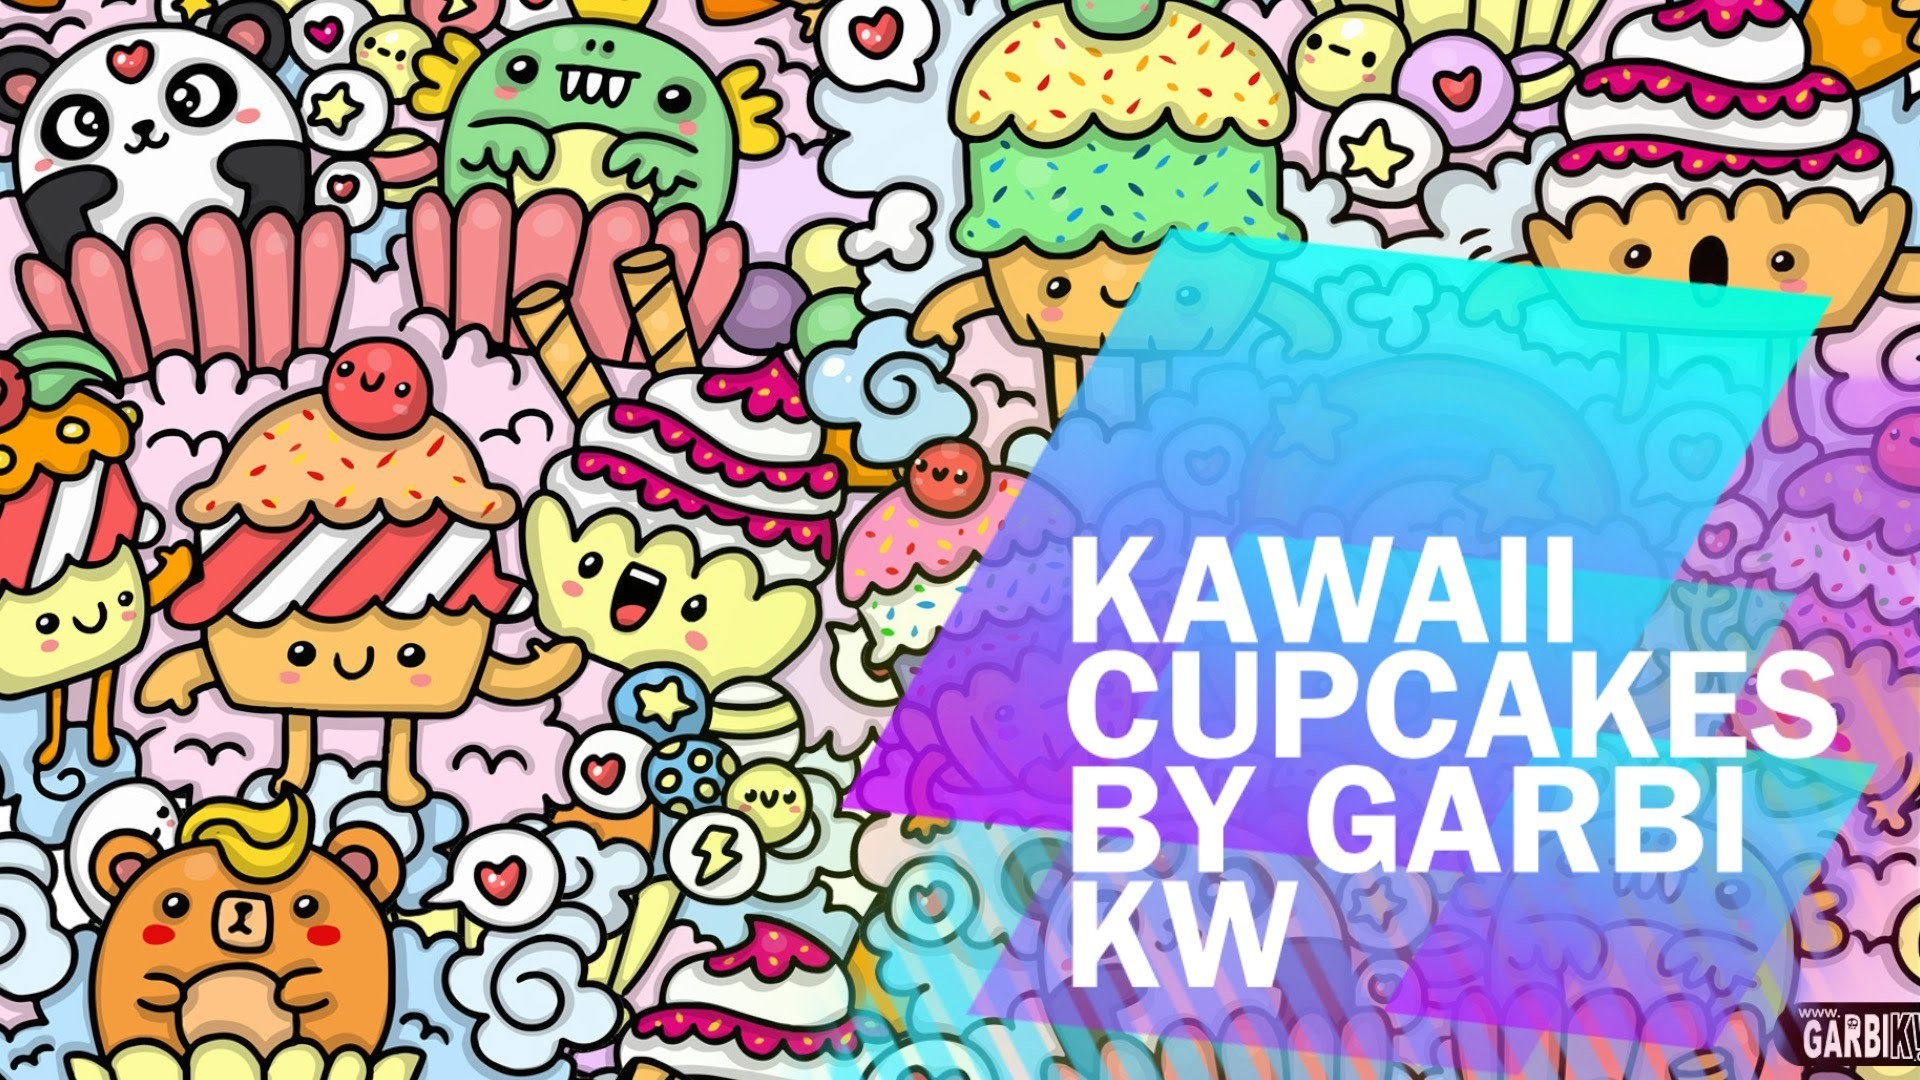 1920x1080 â¥ Kawaii Cupcakes â¥ Cute Doodles and Kawaii Graffiti by Garbi KW â¥ - YouTube